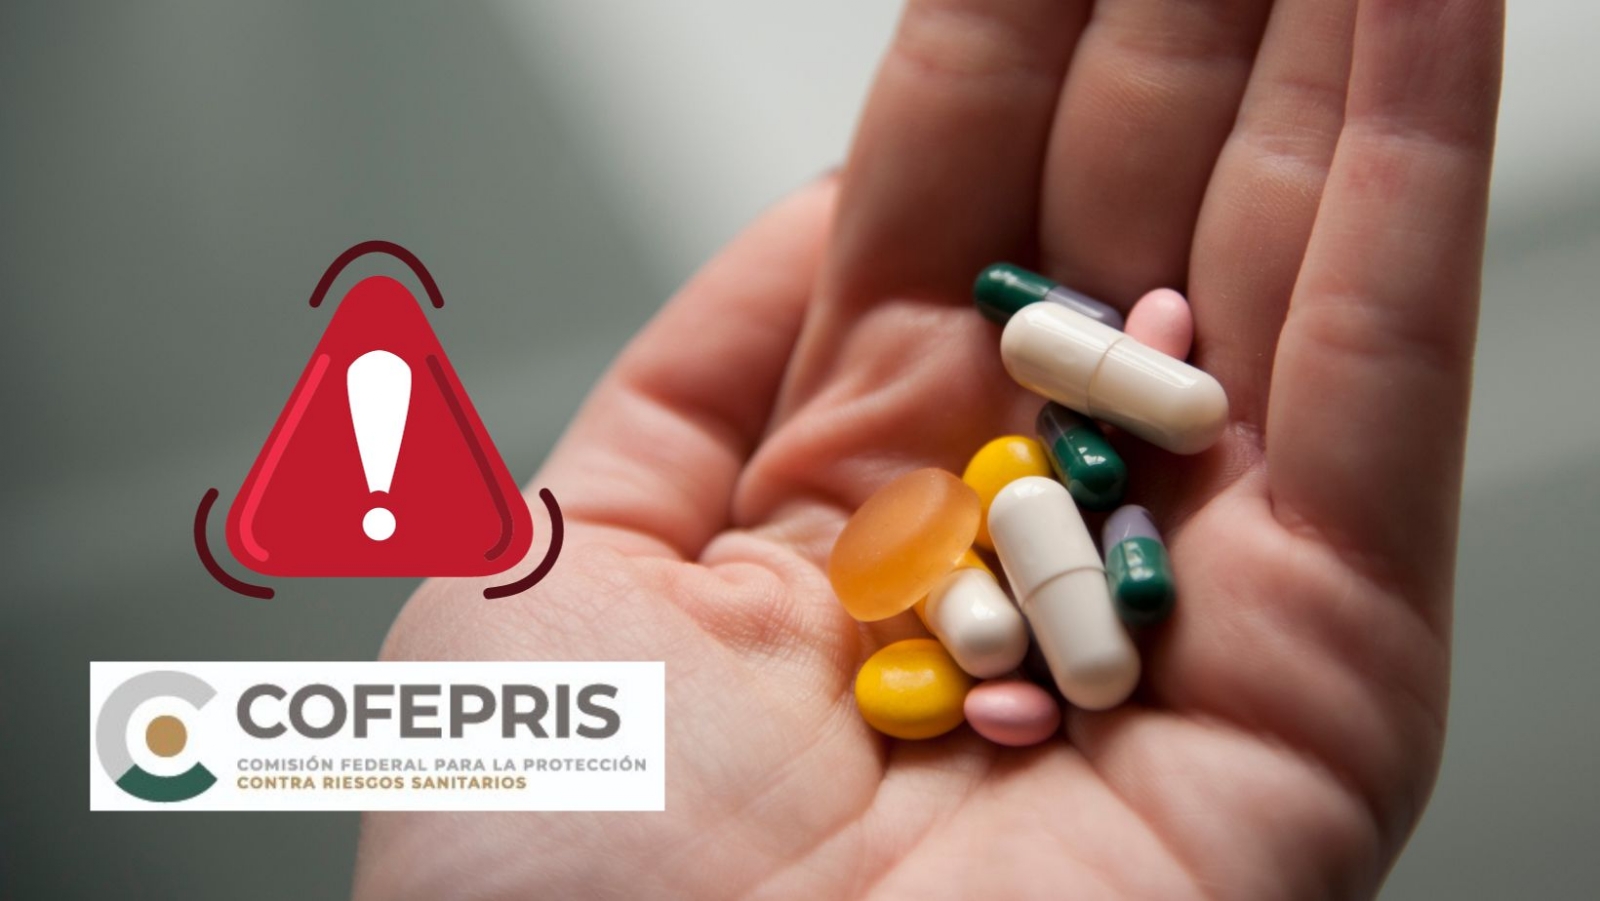 Cofepris emite alerta por receta de medicamentos con cefalosporinas por provocar convulsiones